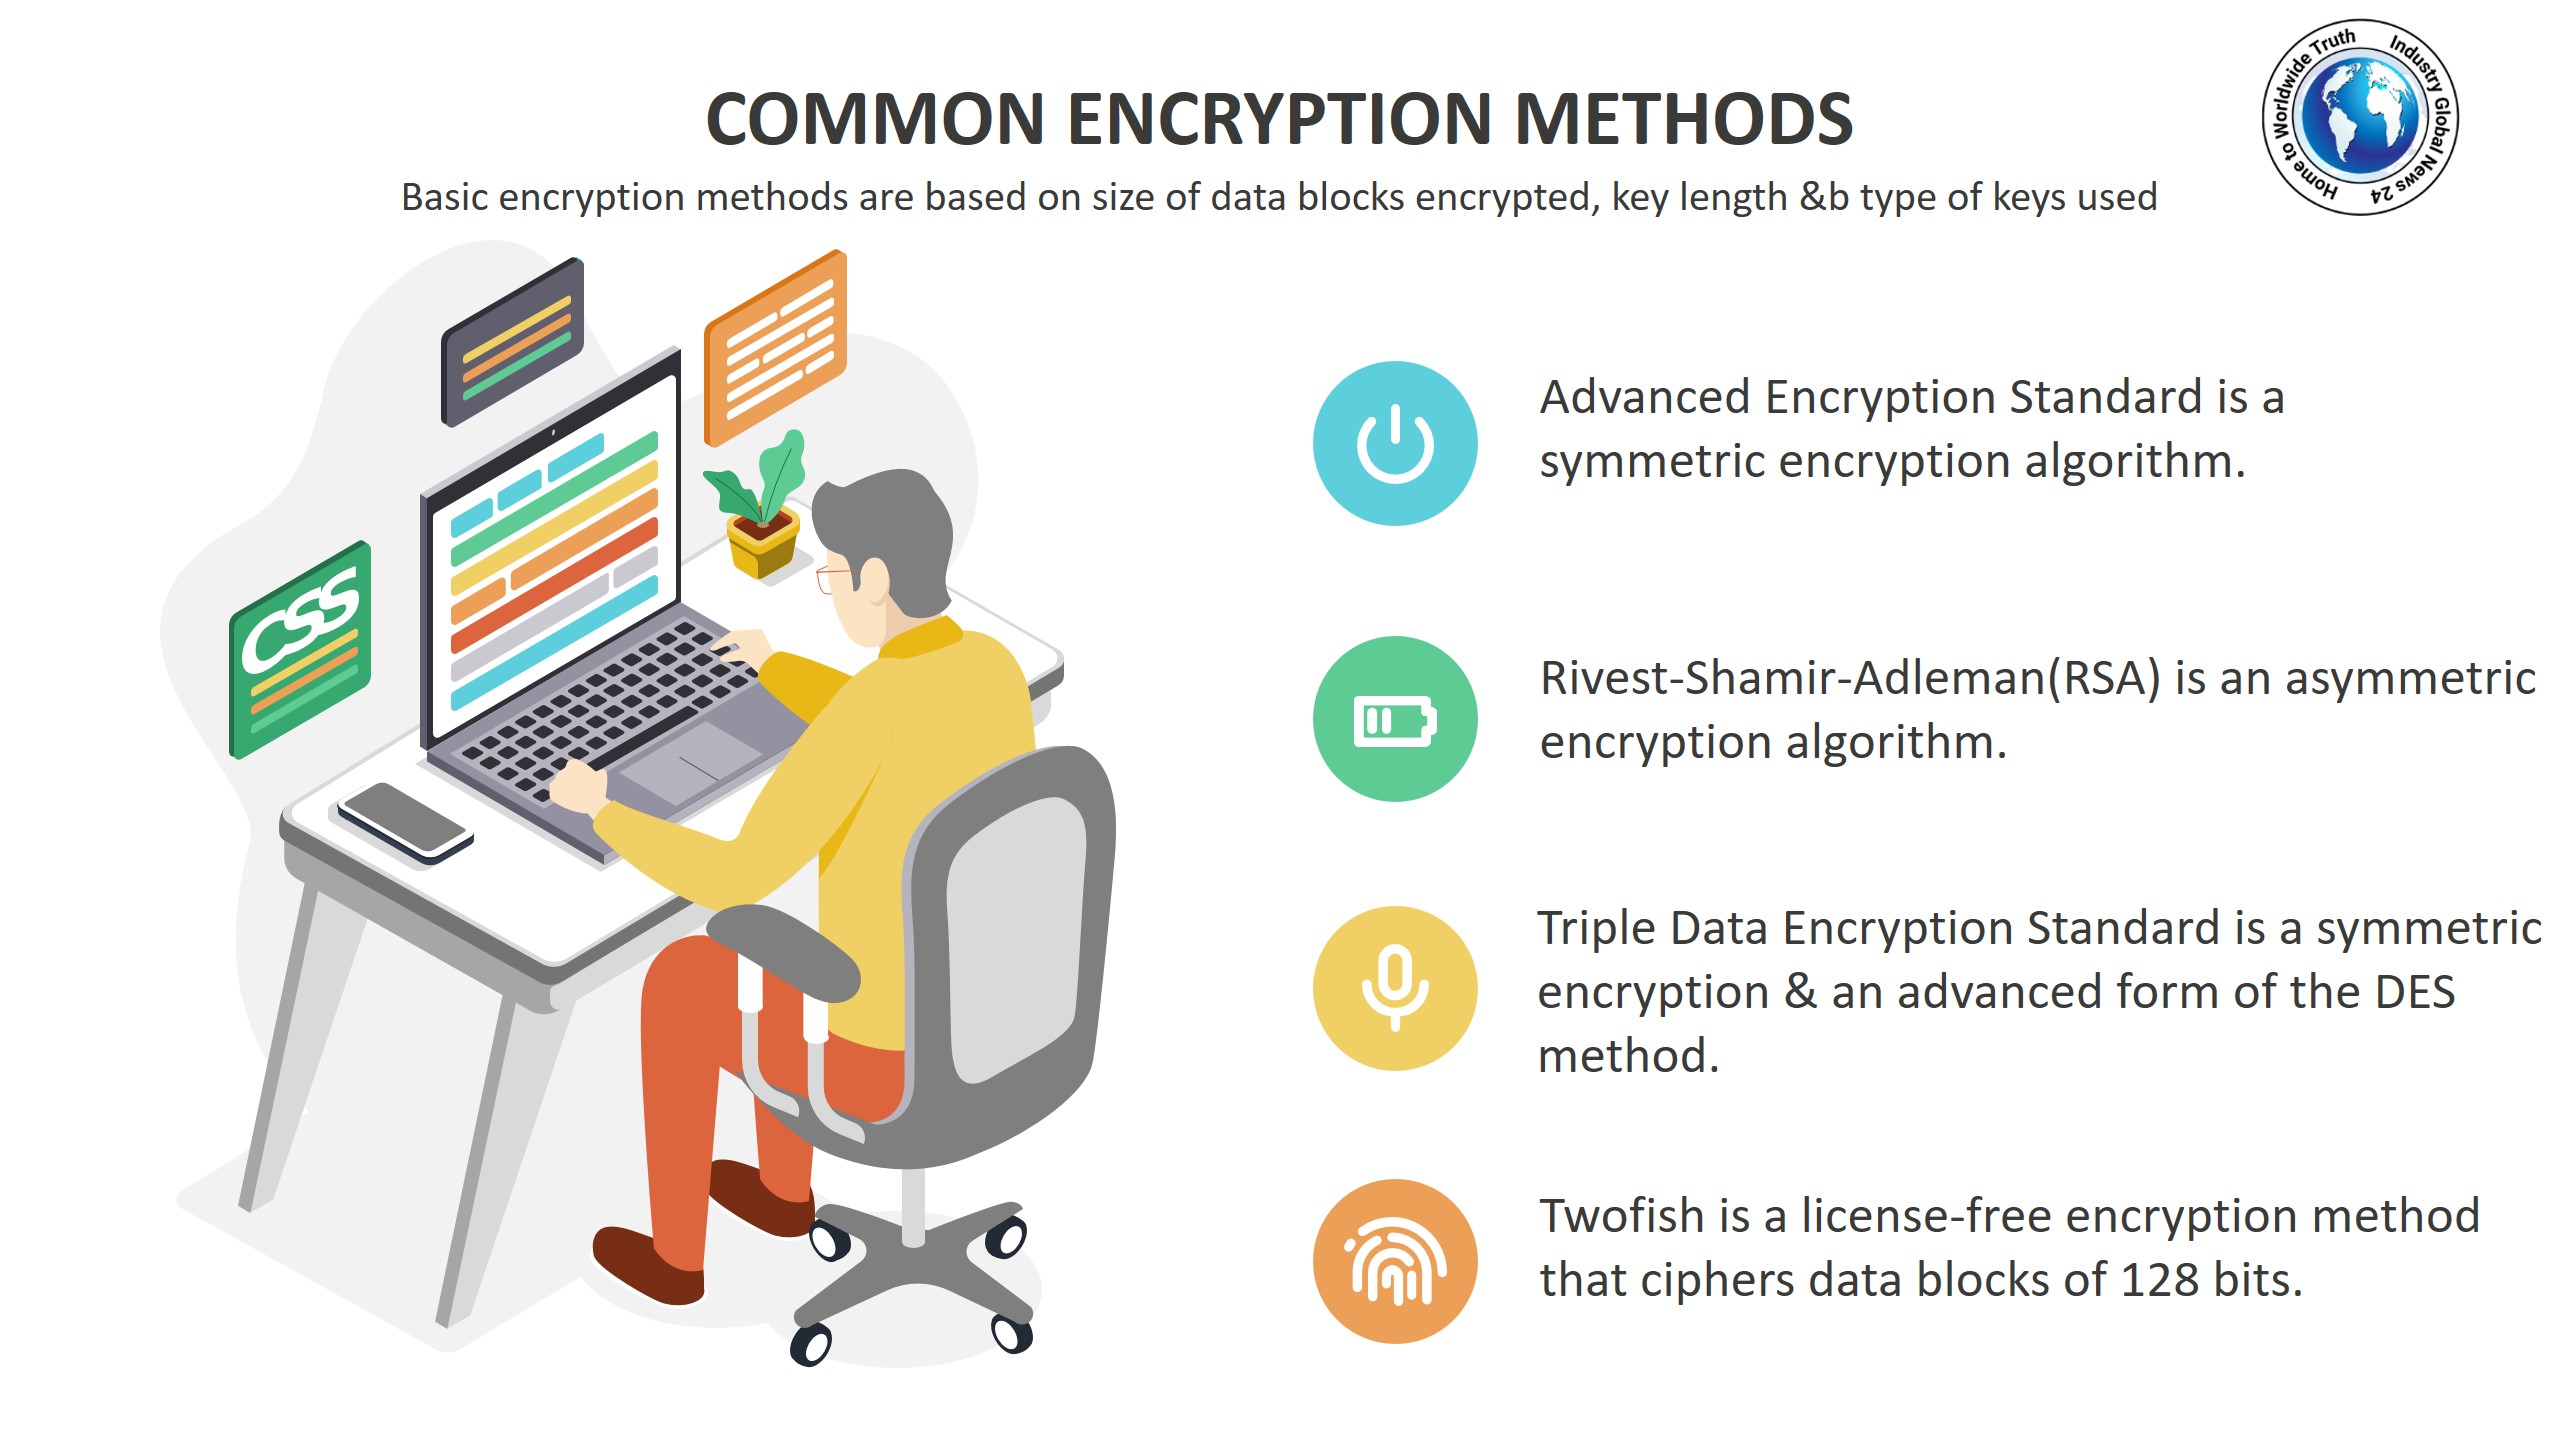 Common encryption methods